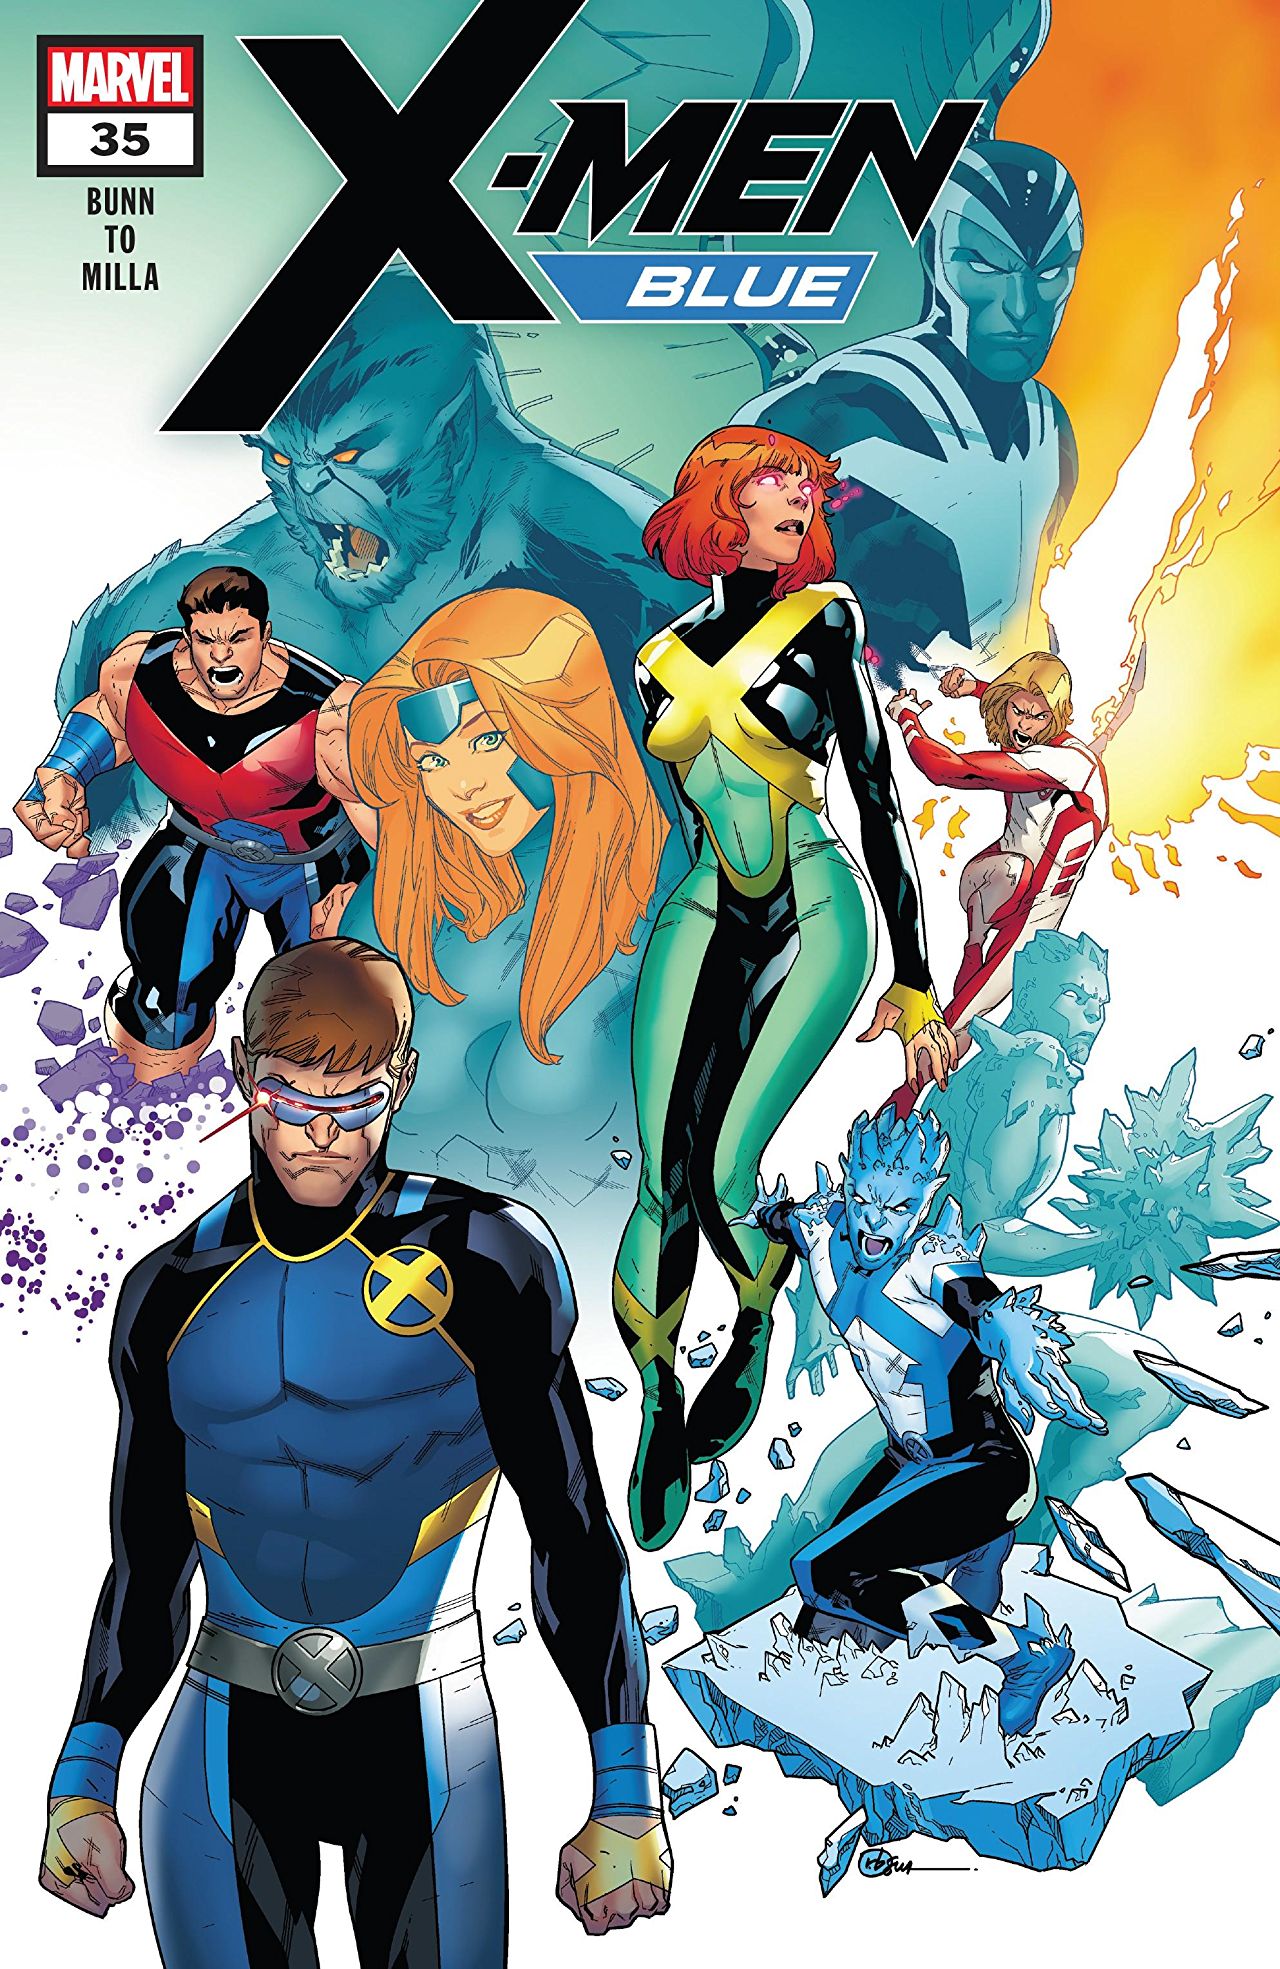 X-Men Blue #35 review